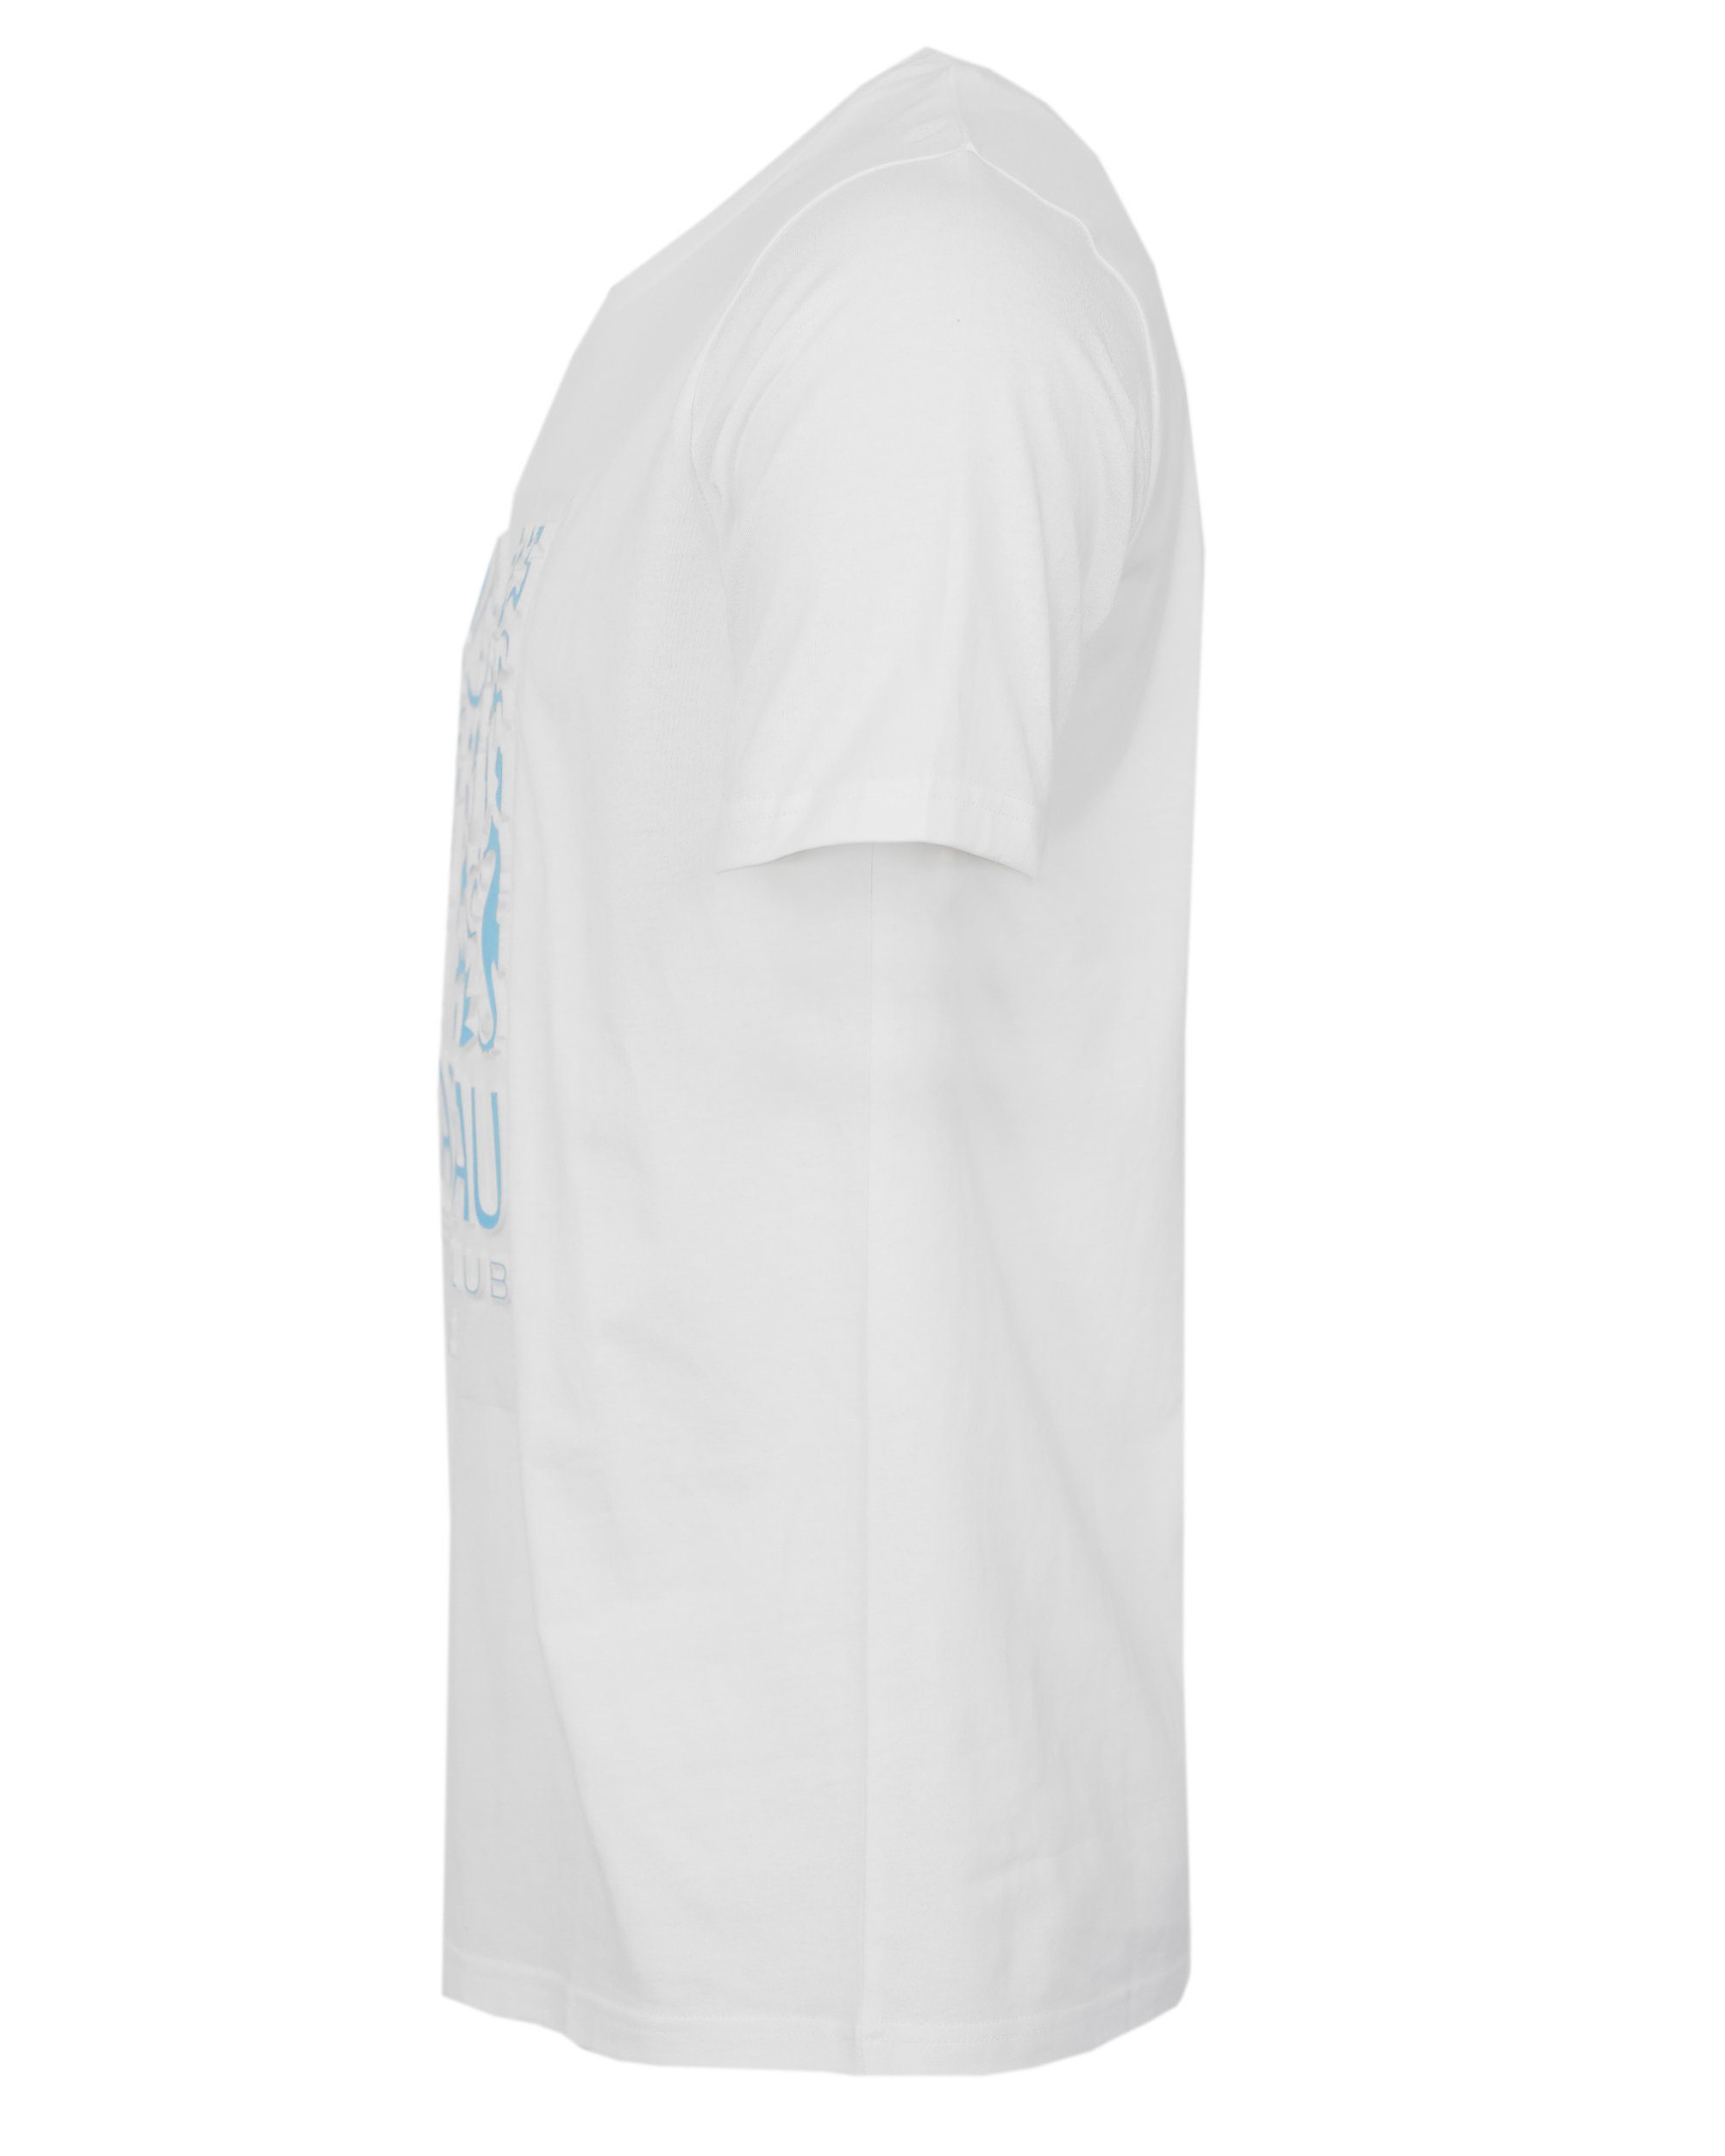 T-Shirt NB22014 NASSAU BEACH